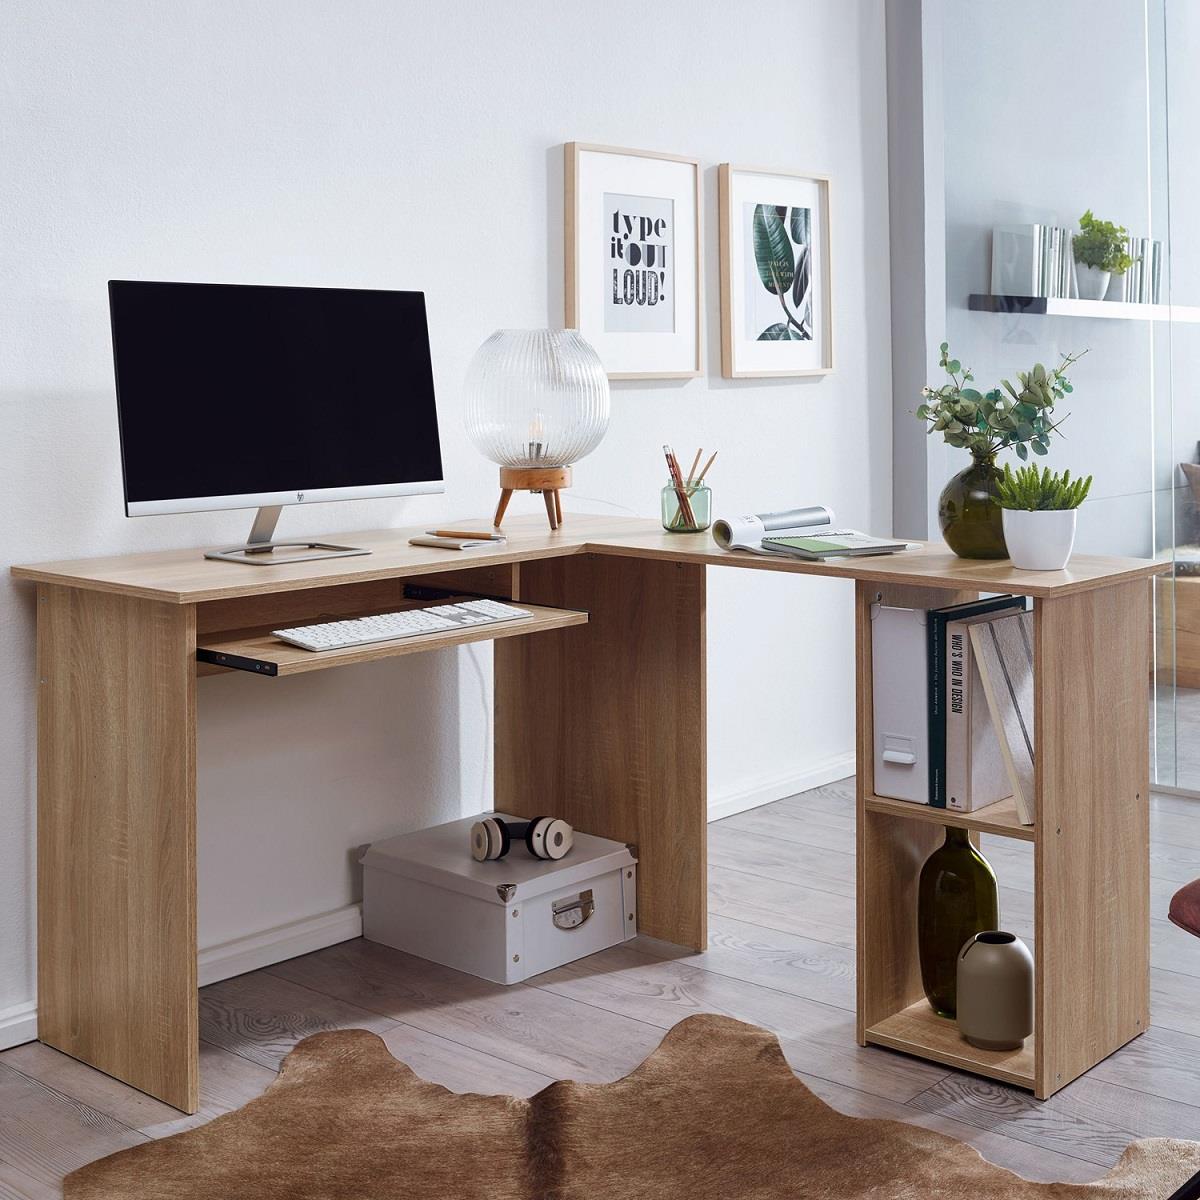 Computertisch OLONG, Abmessungen 140x120x75 cm, L-förmig mit Regalböden, Holz, Farbe Eiche